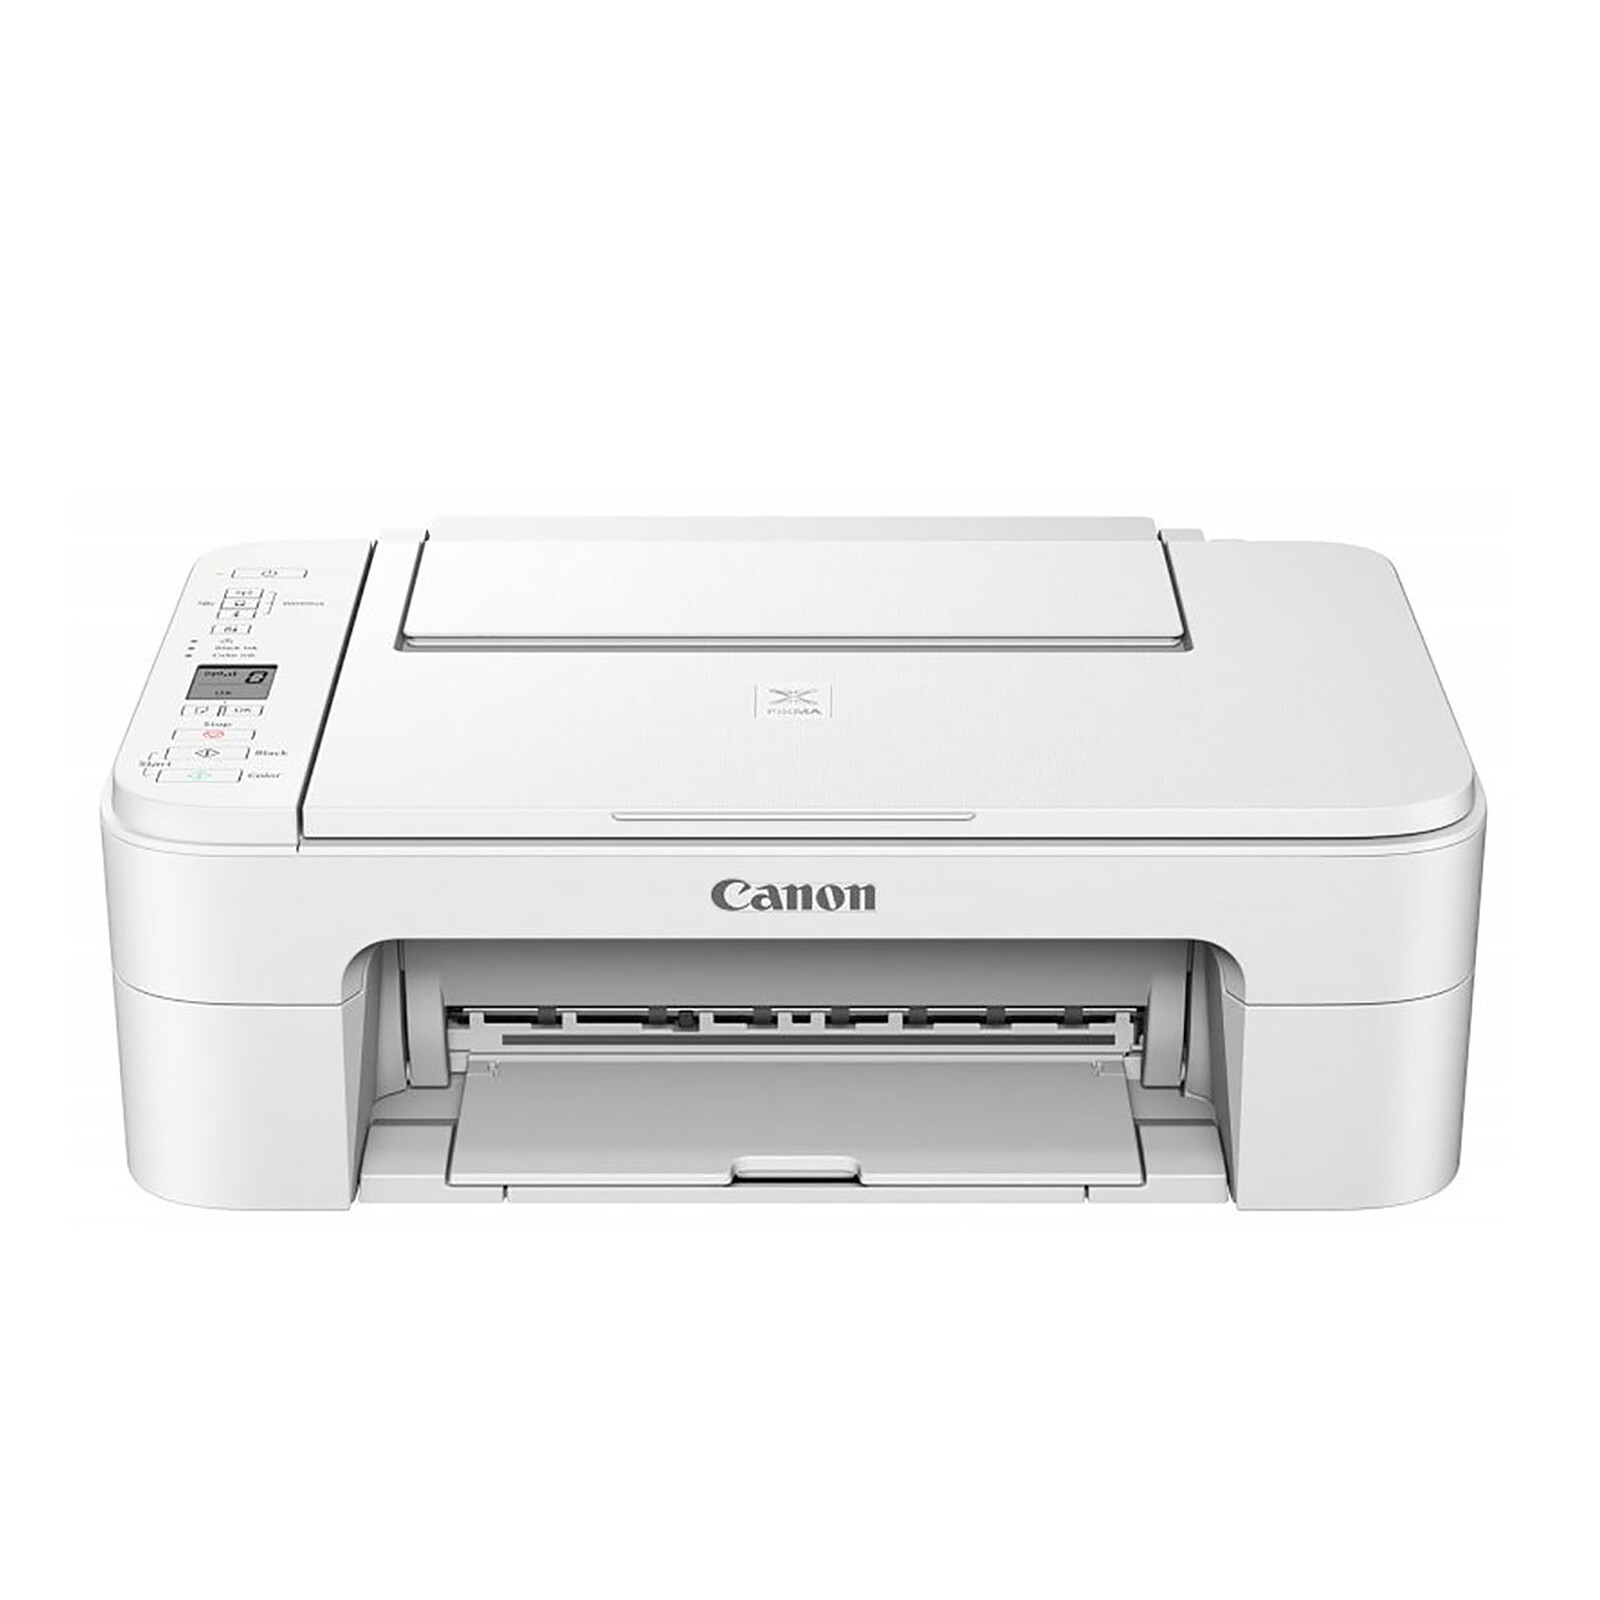 Canon PIXMA TS5350 Three-in-One Wireless Wi-Fi Printer, Black, Compare